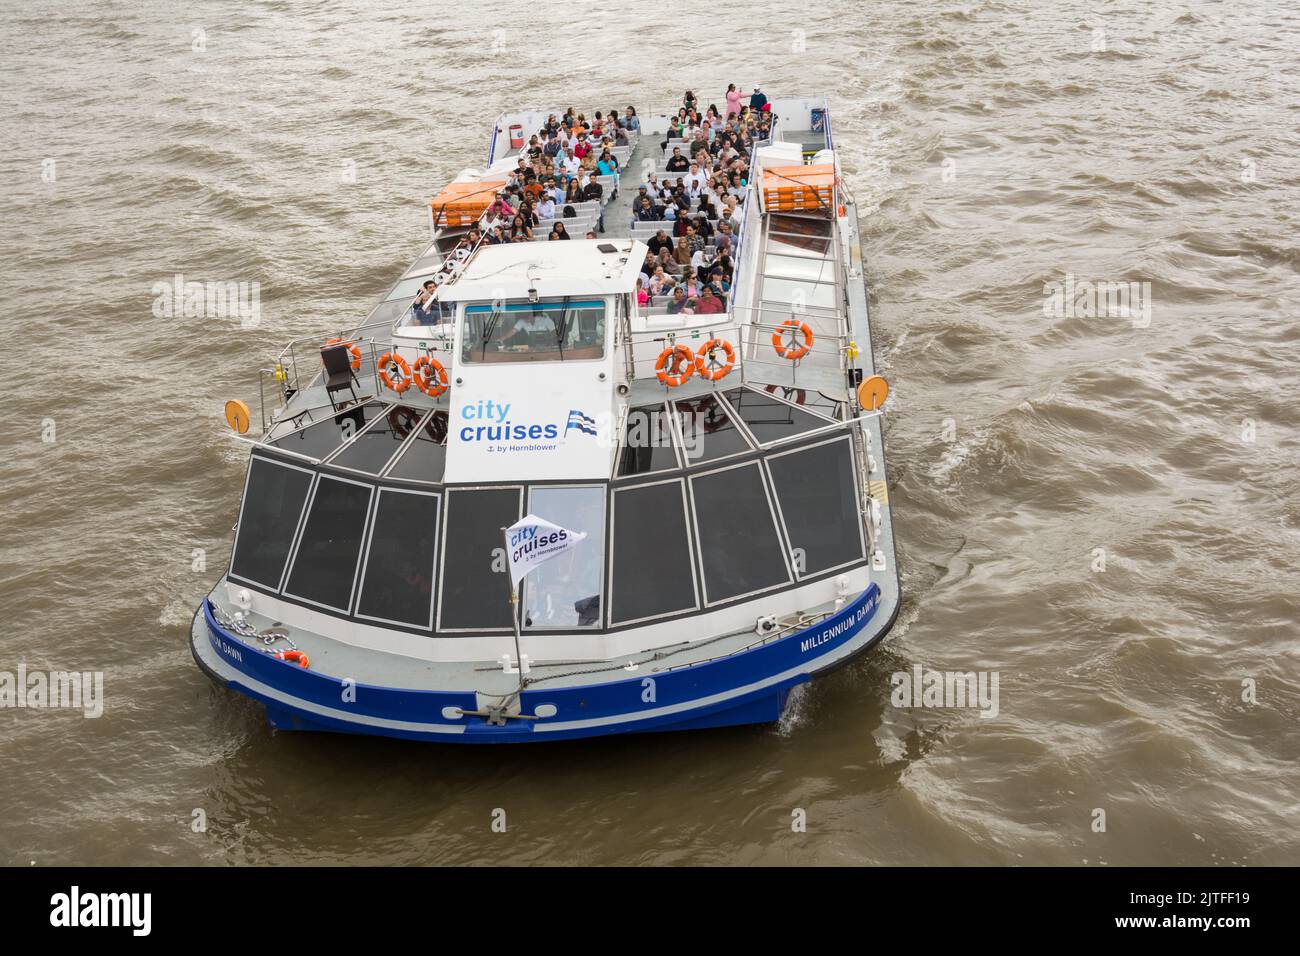 Primer plano de los turistas a bordo del barco de placer Millennium Dawn A City Cruises en el río Támesis, Londres, Inglaterra, Reino Unido Foto de stock